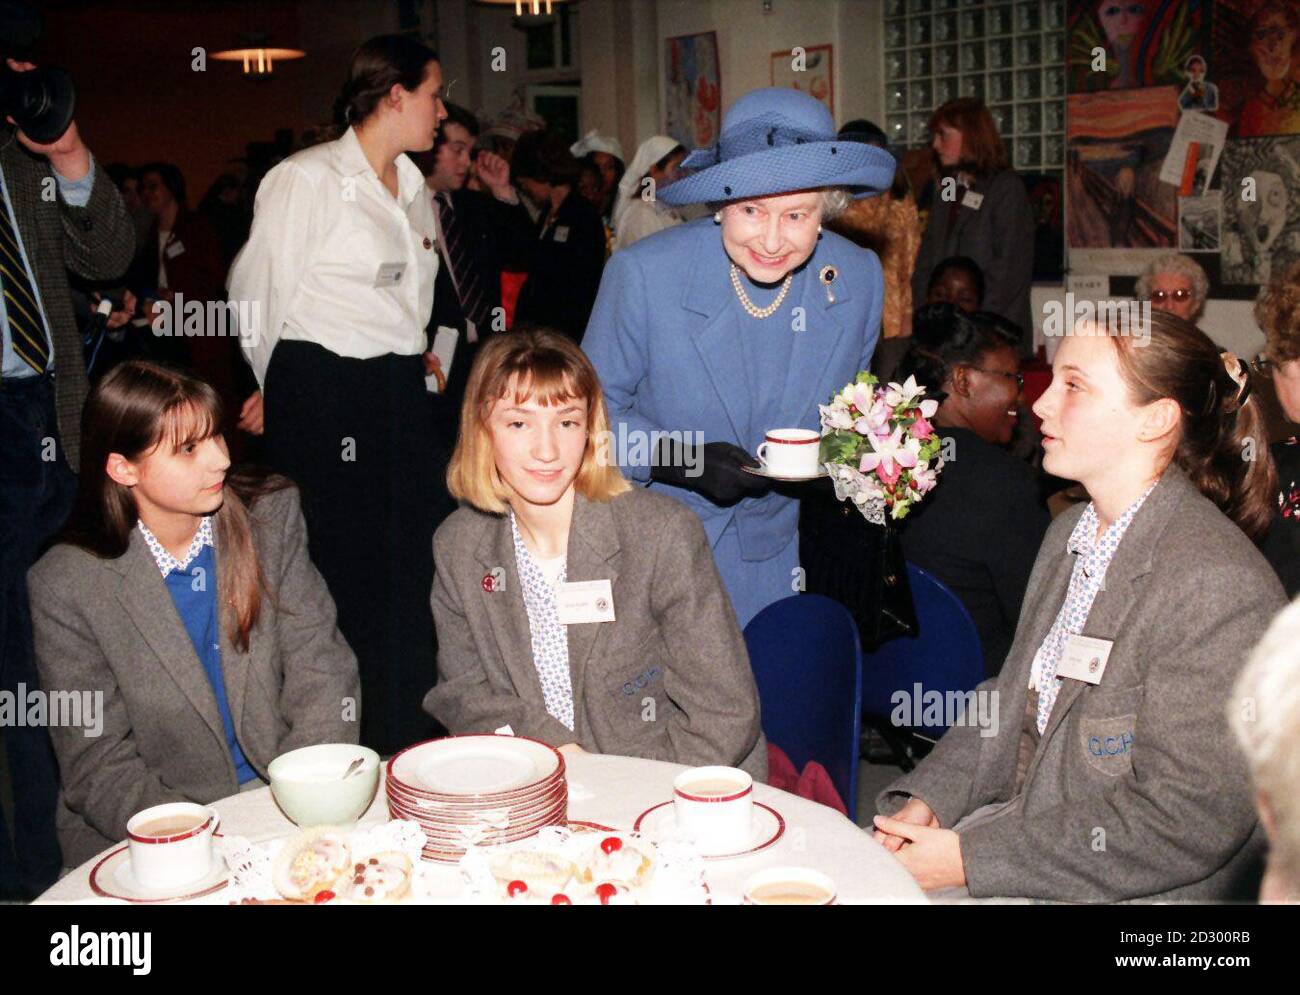 La reine Elizabeth II (au centre) a pris le thé avec les élèves lors d'une visite à l'école de l'hôpital Graycoat pour souligner son centenaire aujourd'hui (mercredi). Photos PA (Sun Rota Pic) Banque D'Images